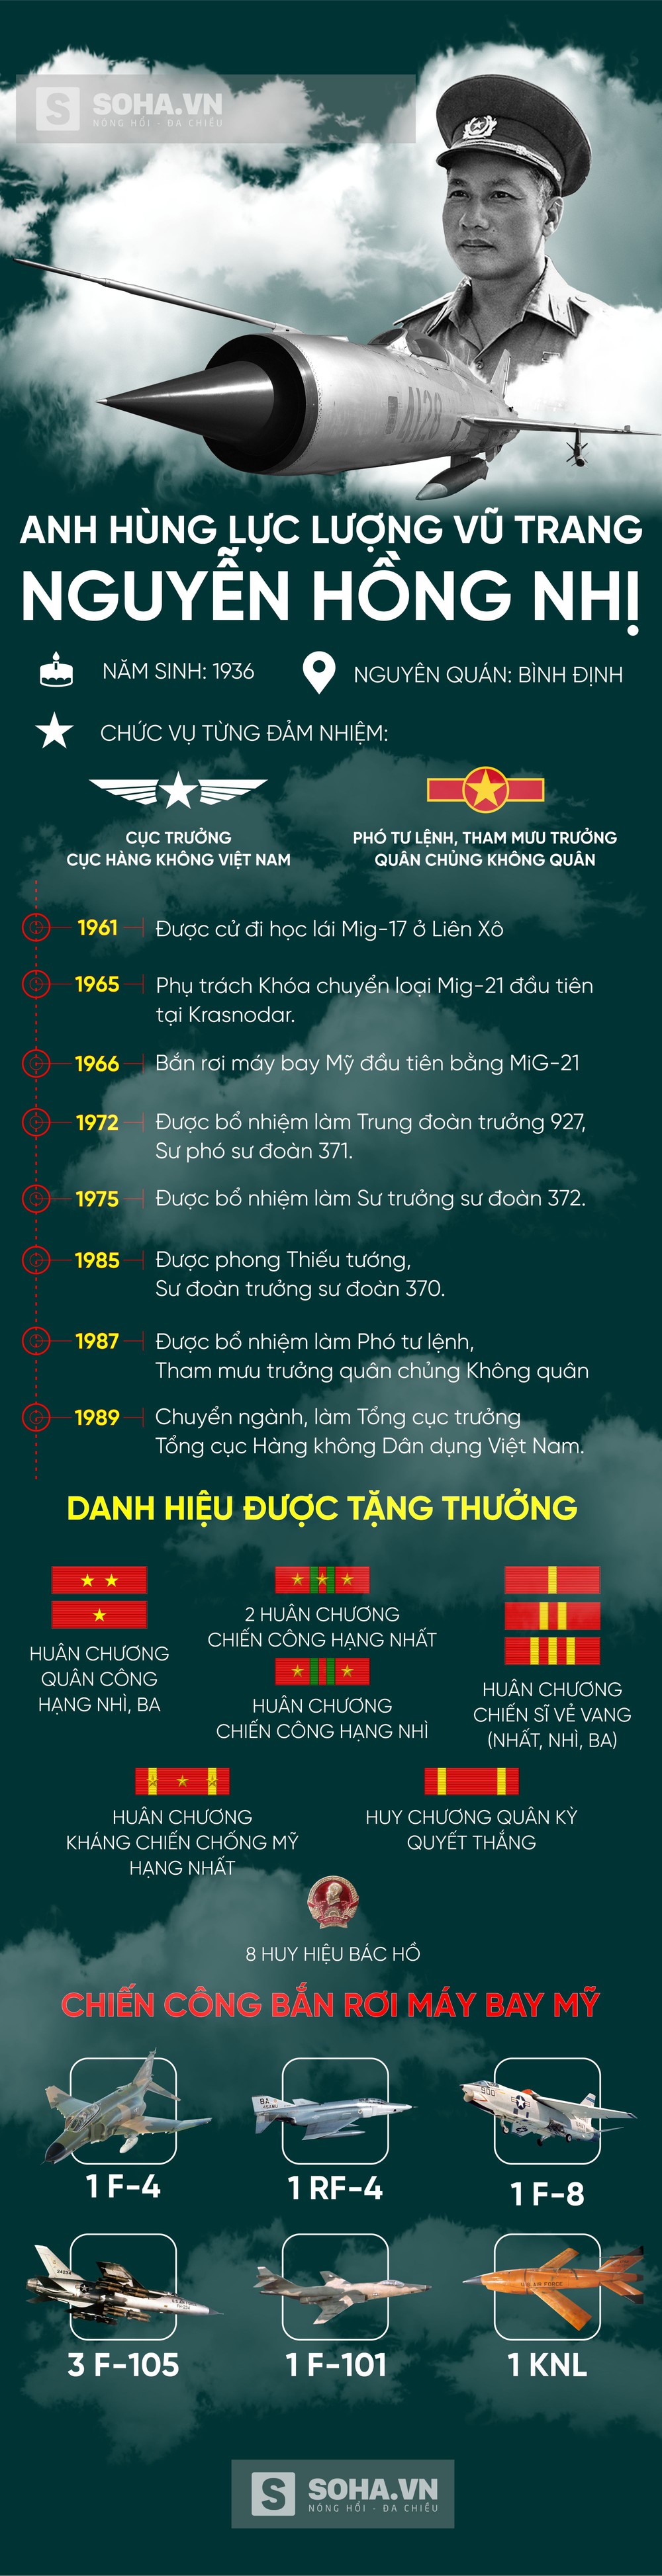 Thiếu tướng Nguyễn Hồng Nhị: Những con số ấn tượng - Một thời làm cả thế giới kinh ngạc - Ảnh 1.